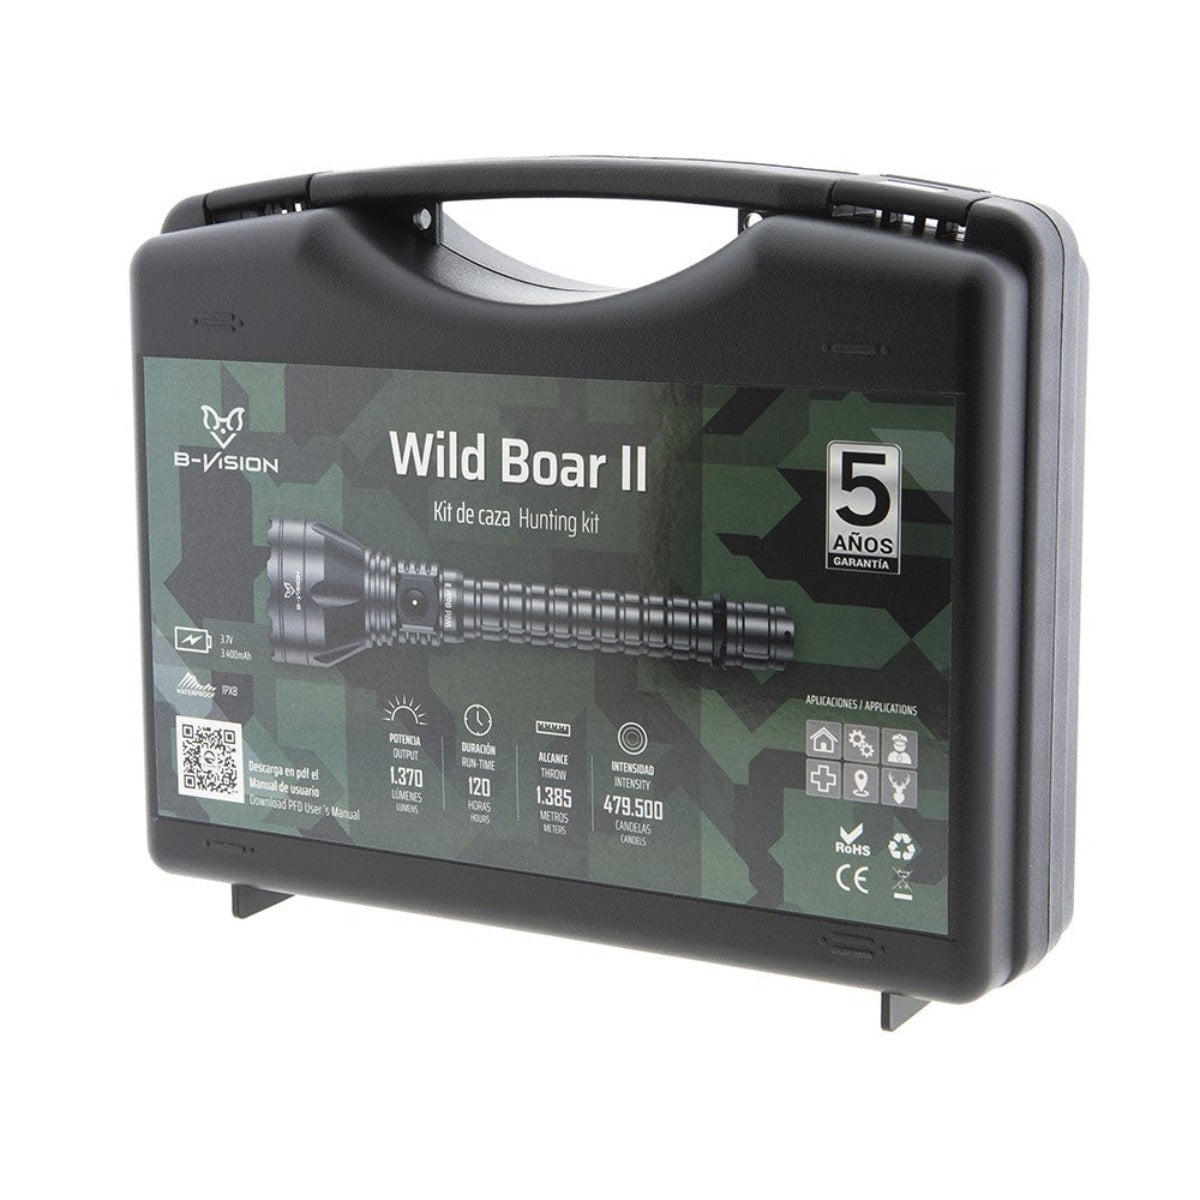 Kit de caza con linterna Wild Boar II Bat Vision